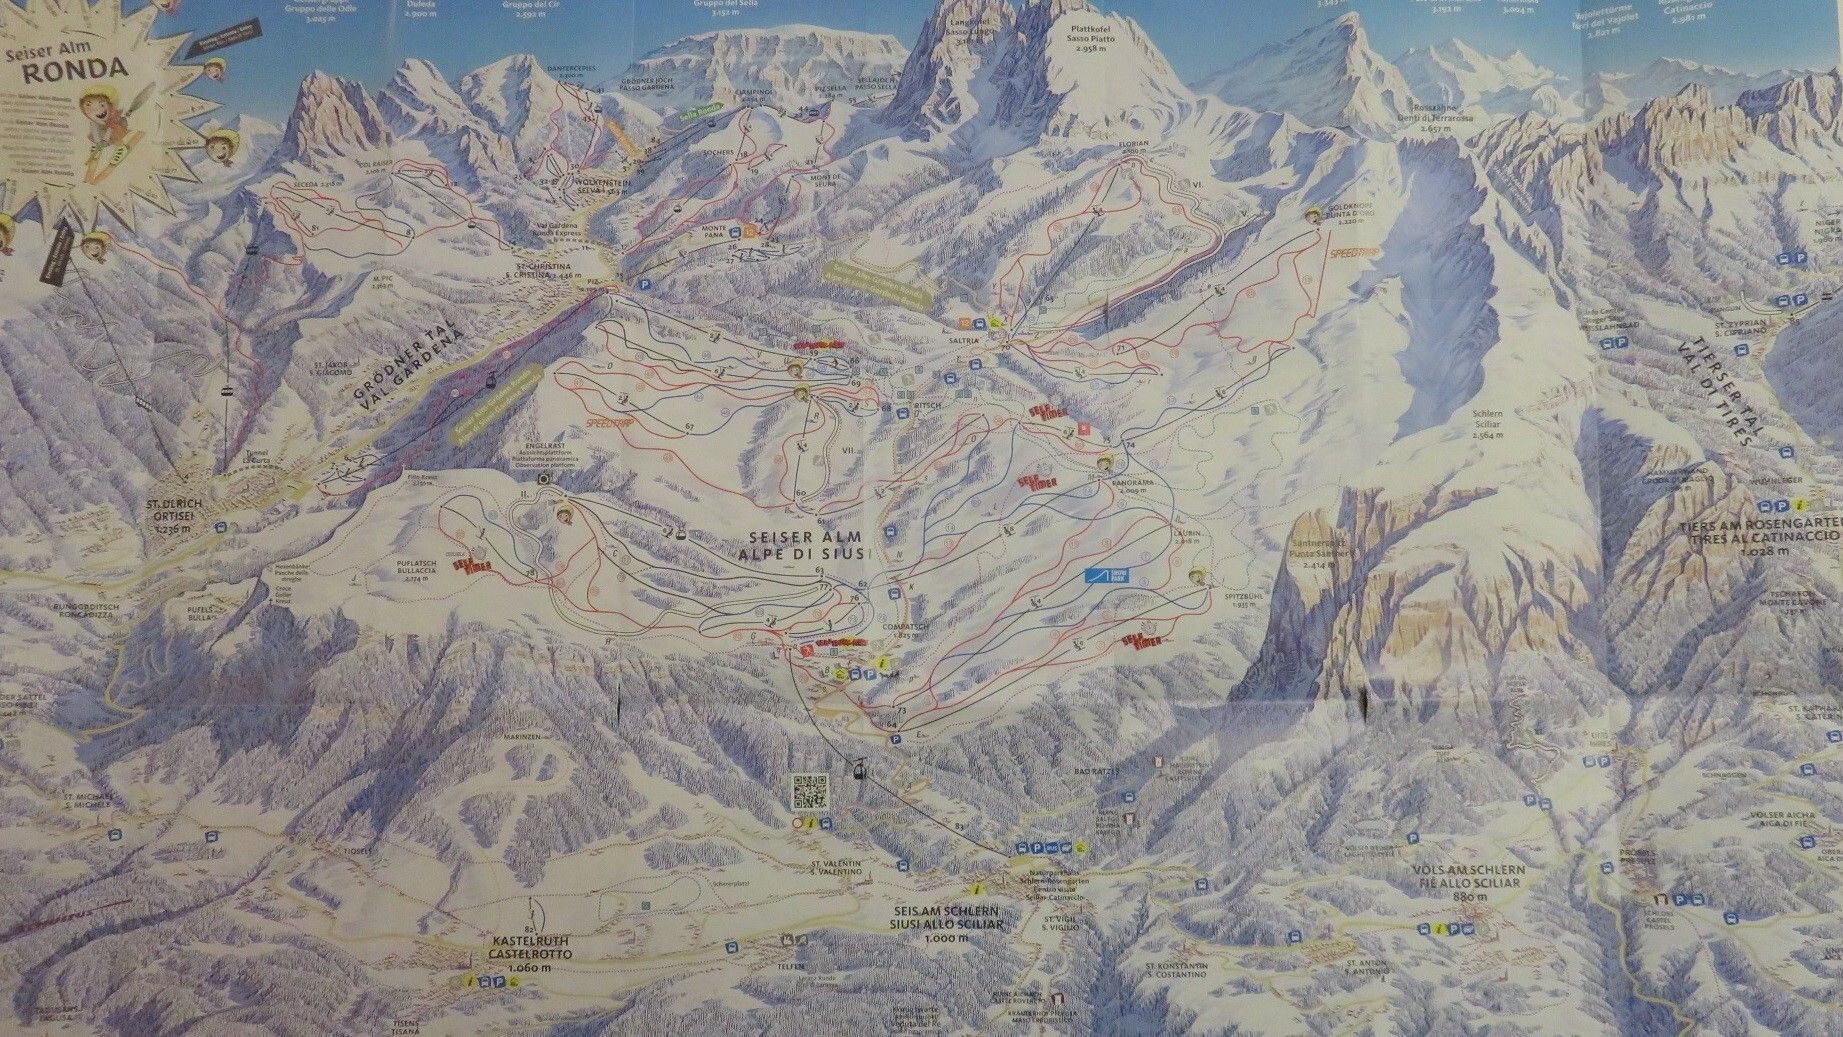 En el mapa figuran tanto los caminos peatonales como las pistas de esquí y trineo. Que nadie se pierda.